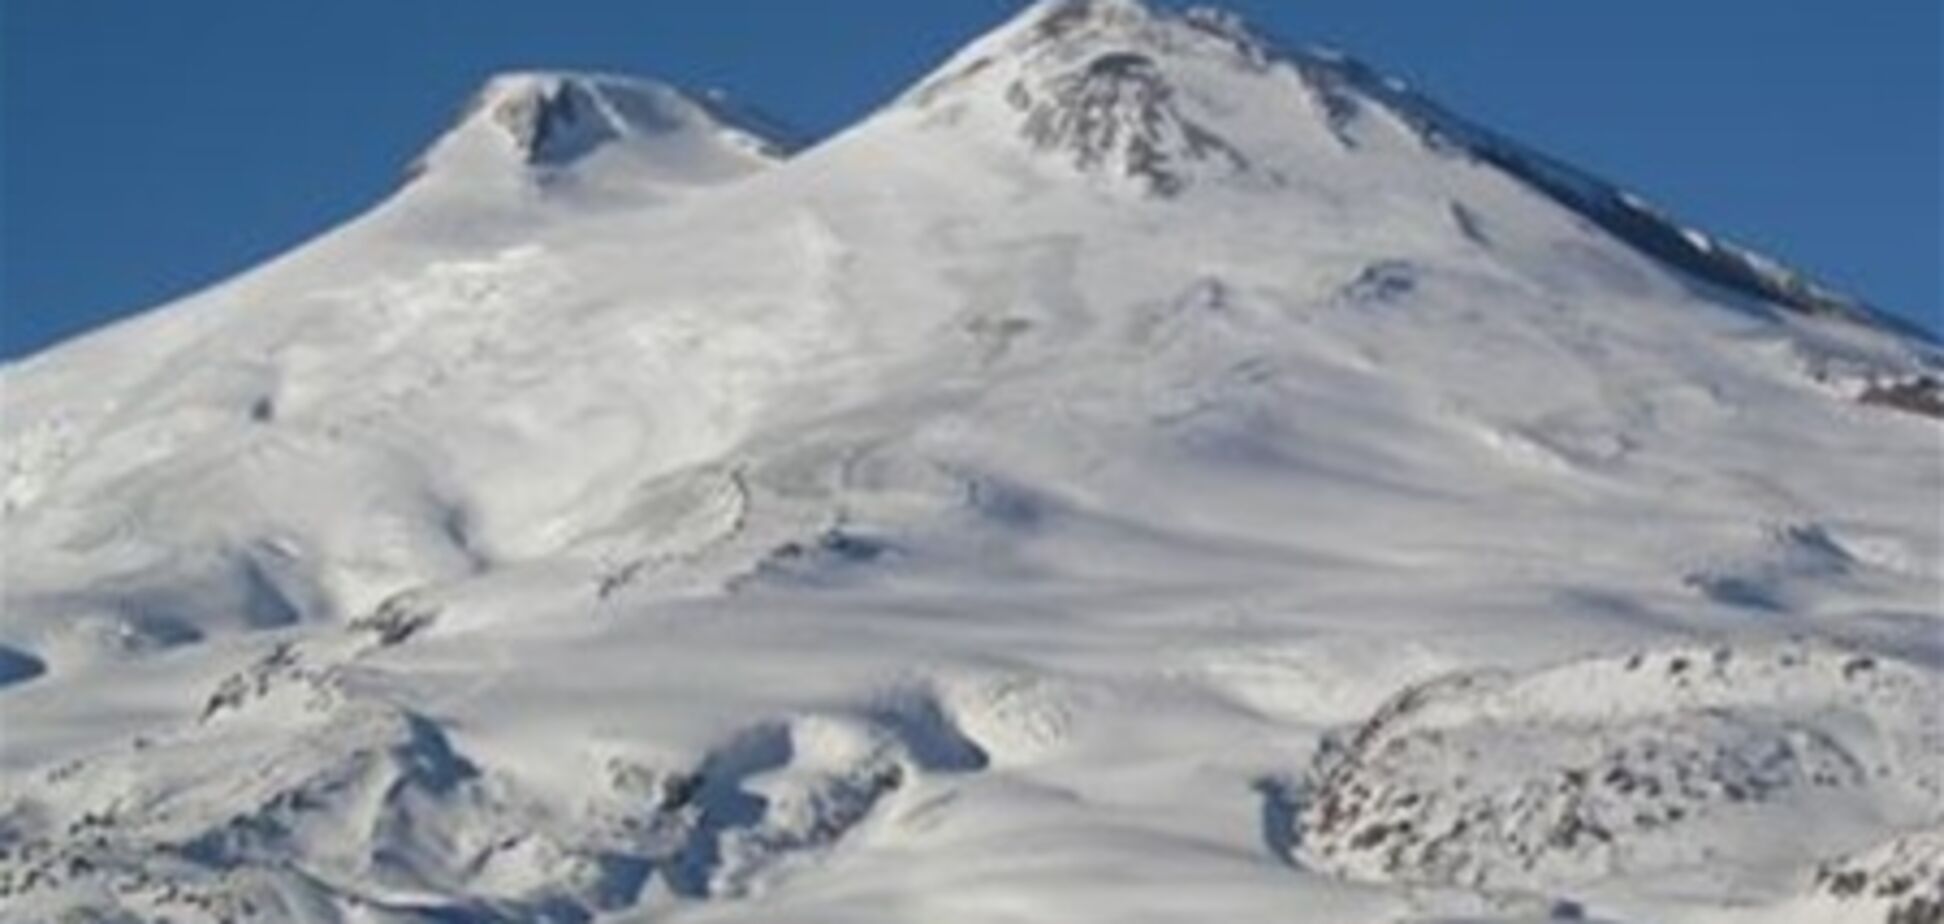 Поиски третьего альпиниста, пропавшего на Эльбрусе, приостановлены